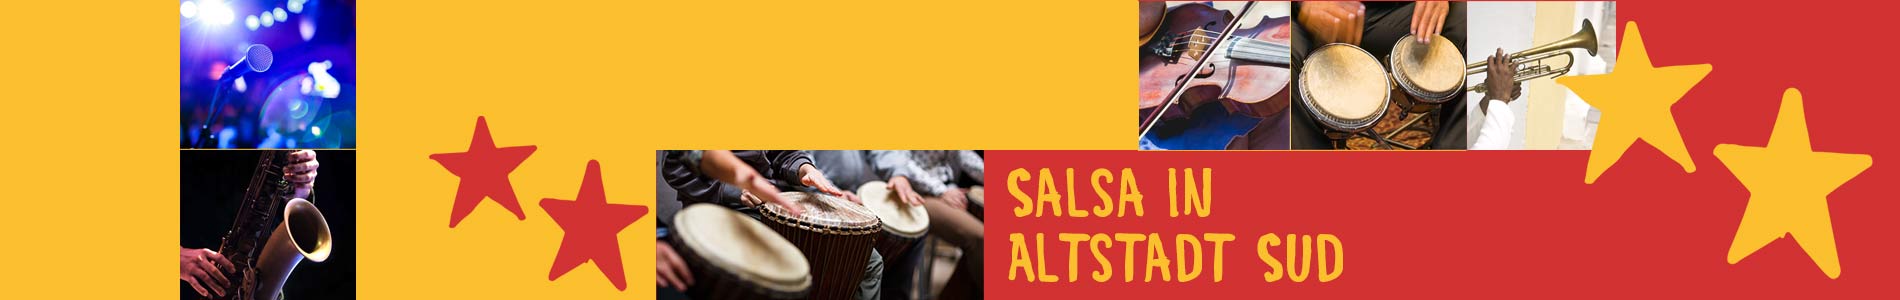 Salsa in Altstadt Sud – Salsa lernen und tanzen, Tanzkurse, Partys, Veranstaltungen